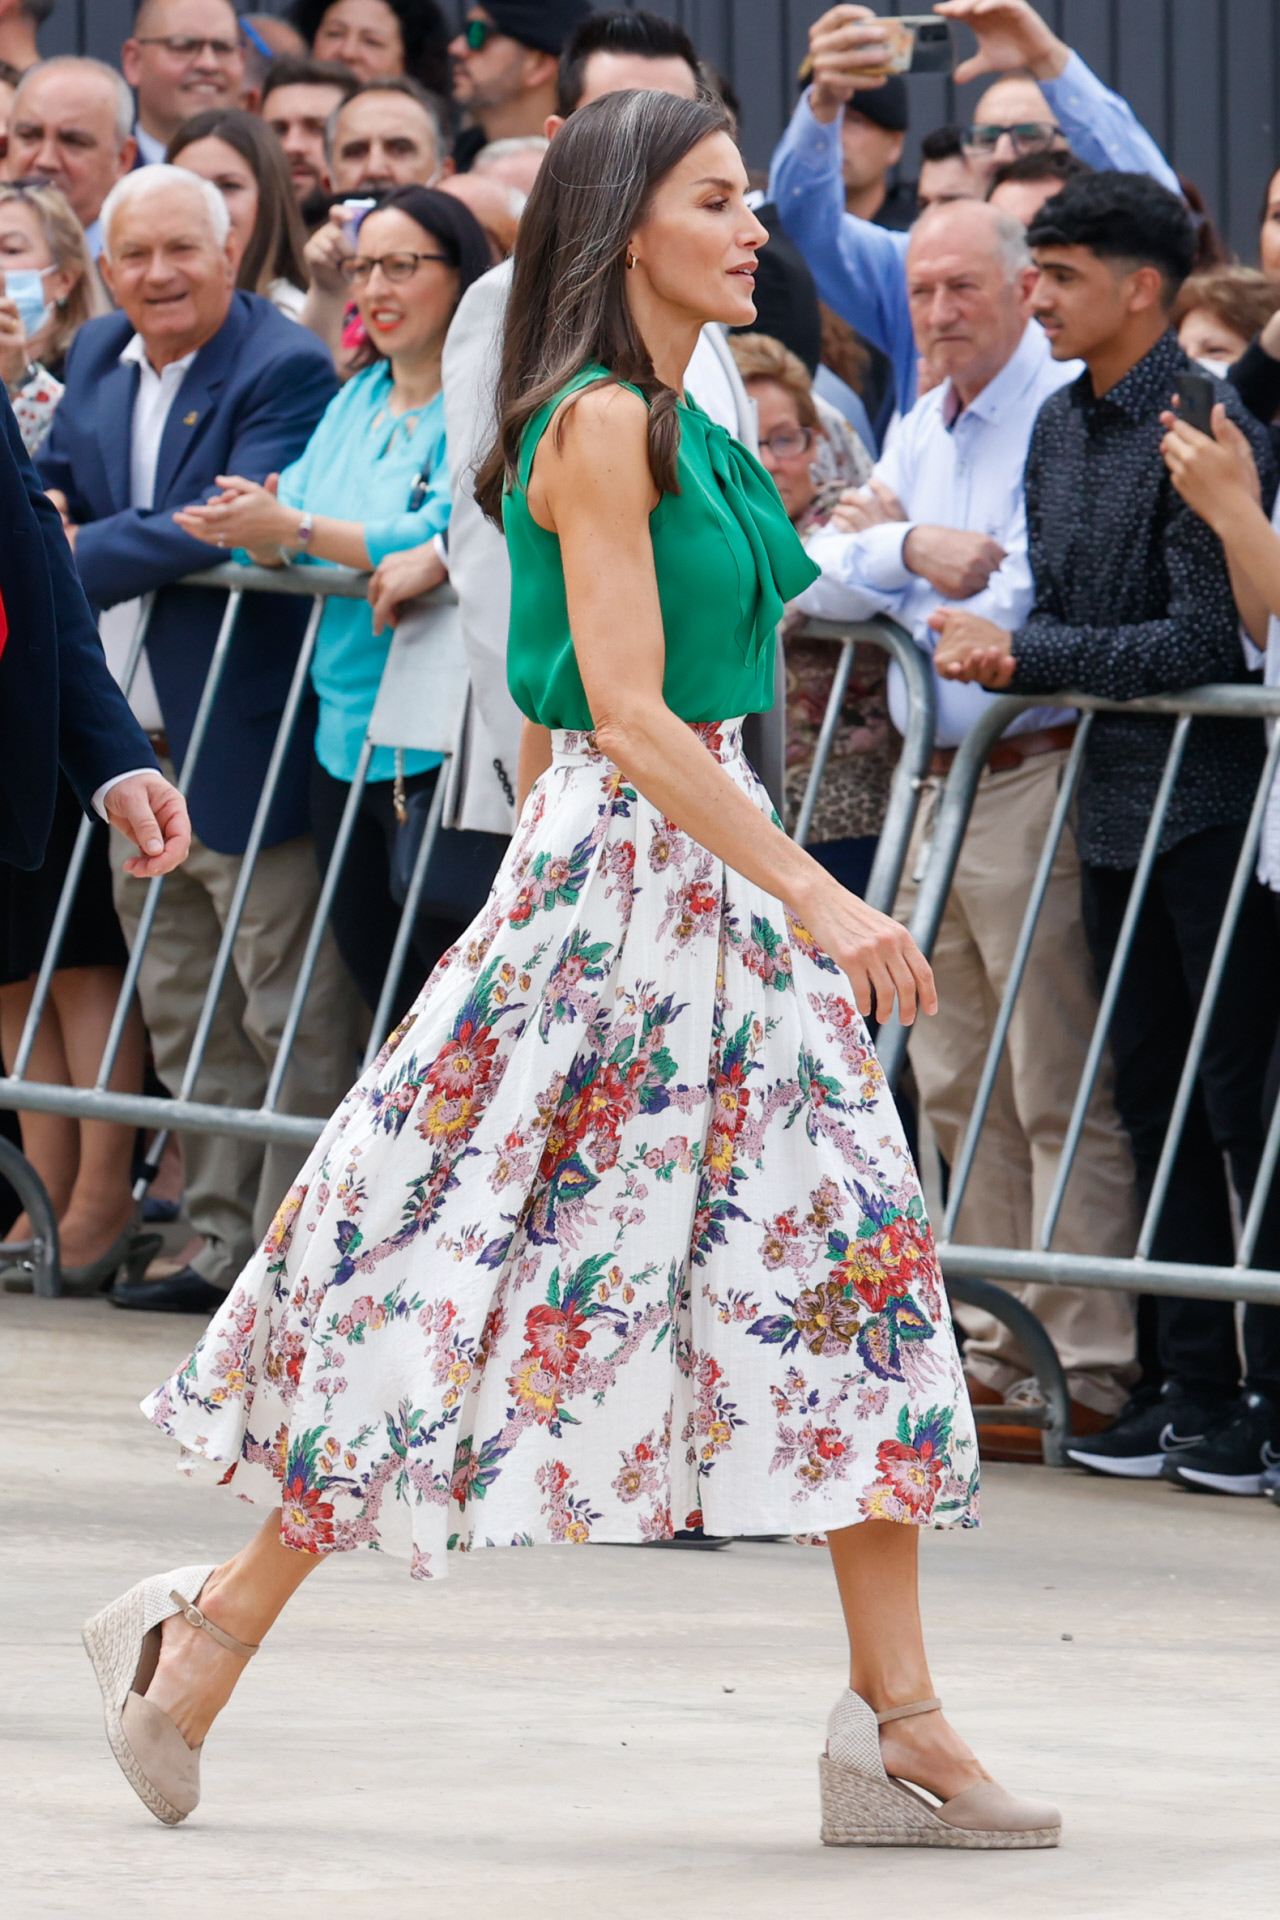 El look de la reina Letizia con falda floral y alpargatas.